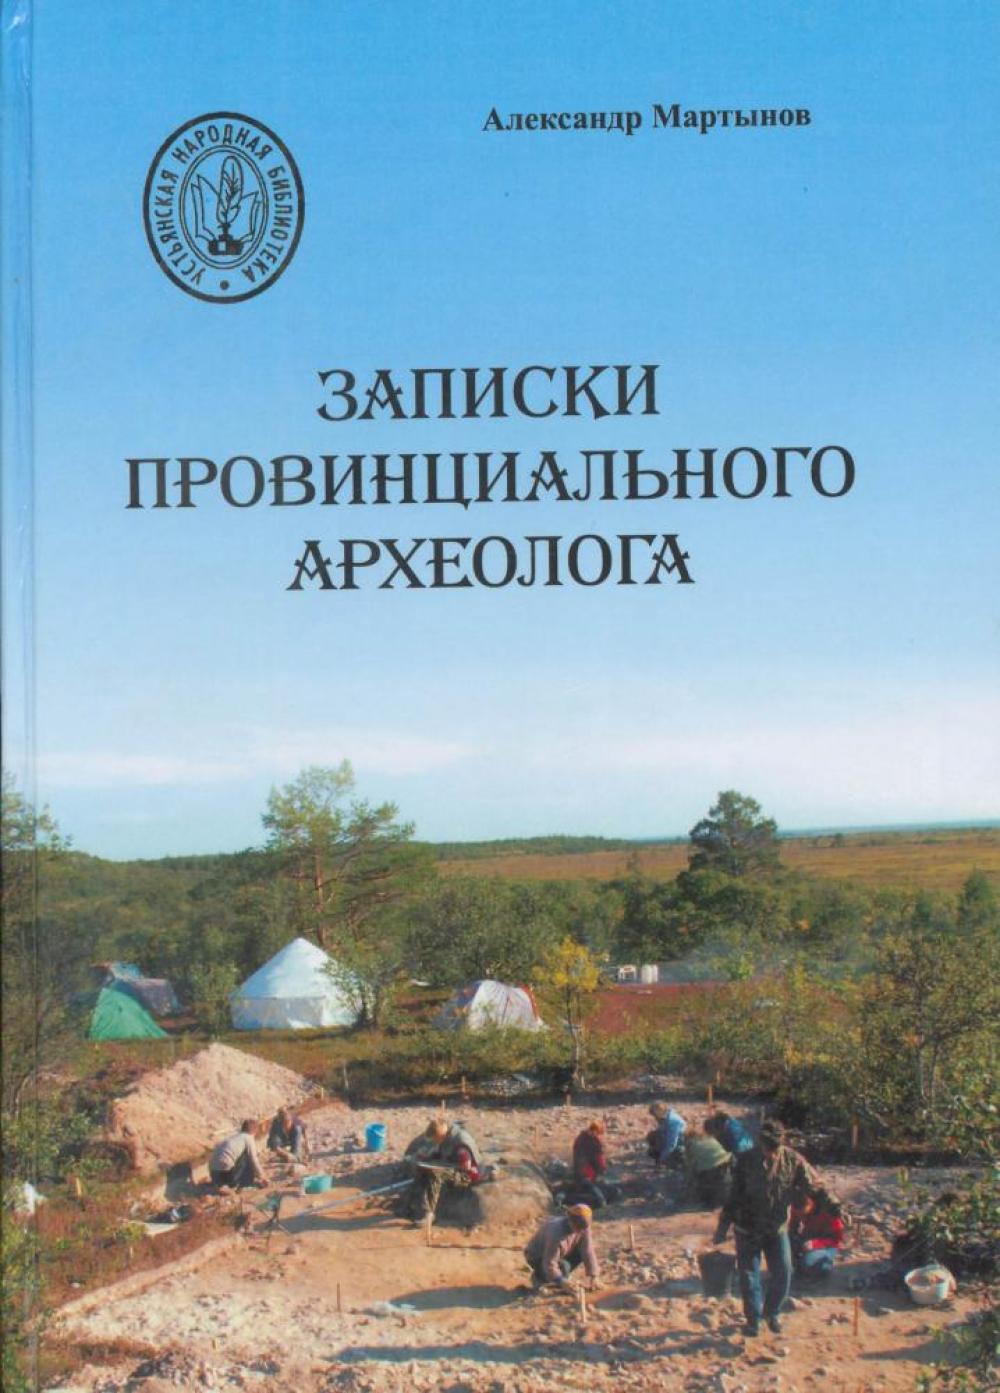 Первое издание книги "Записки провинциального археолога"